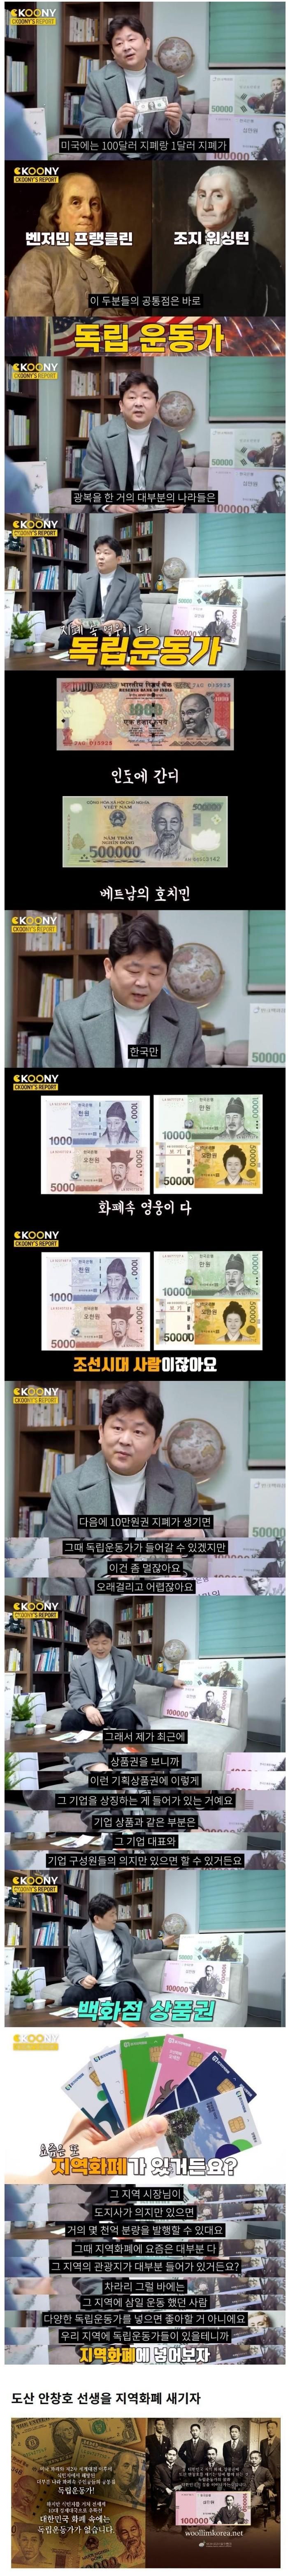 한국 지폐에만 없는 것